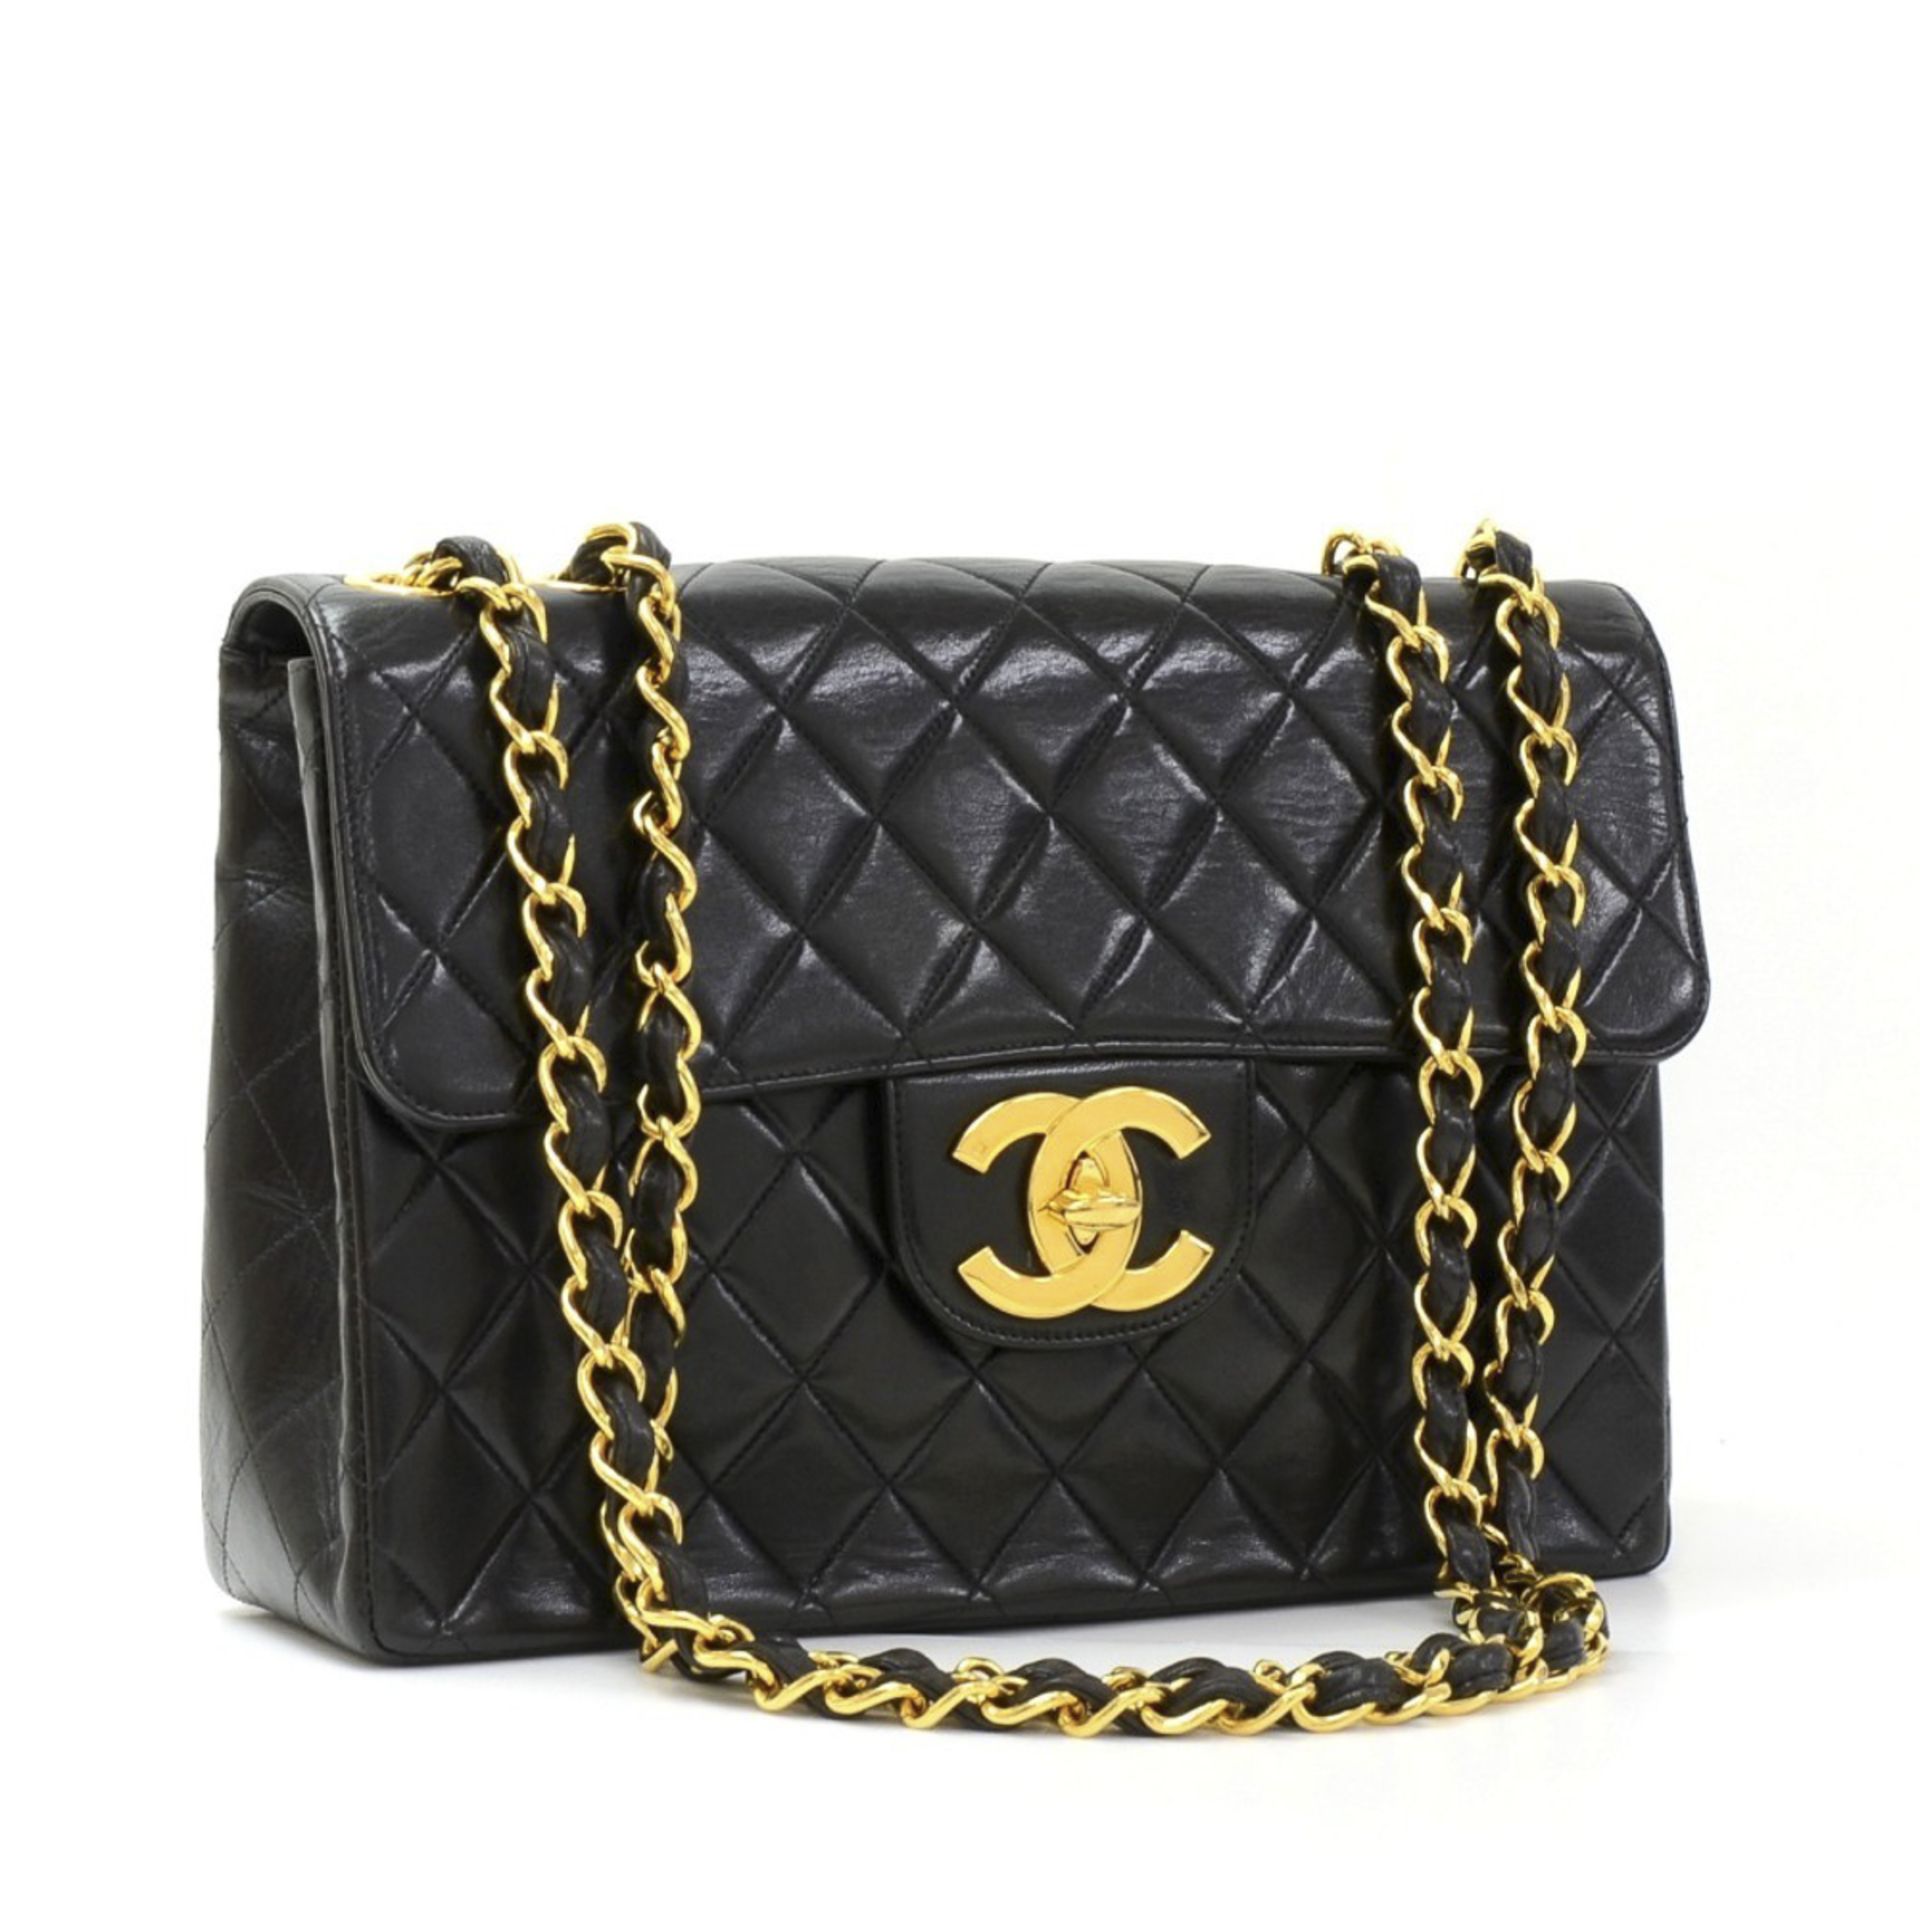 Chanel, Jumbo XL Flap Bag - Image 6 of 12